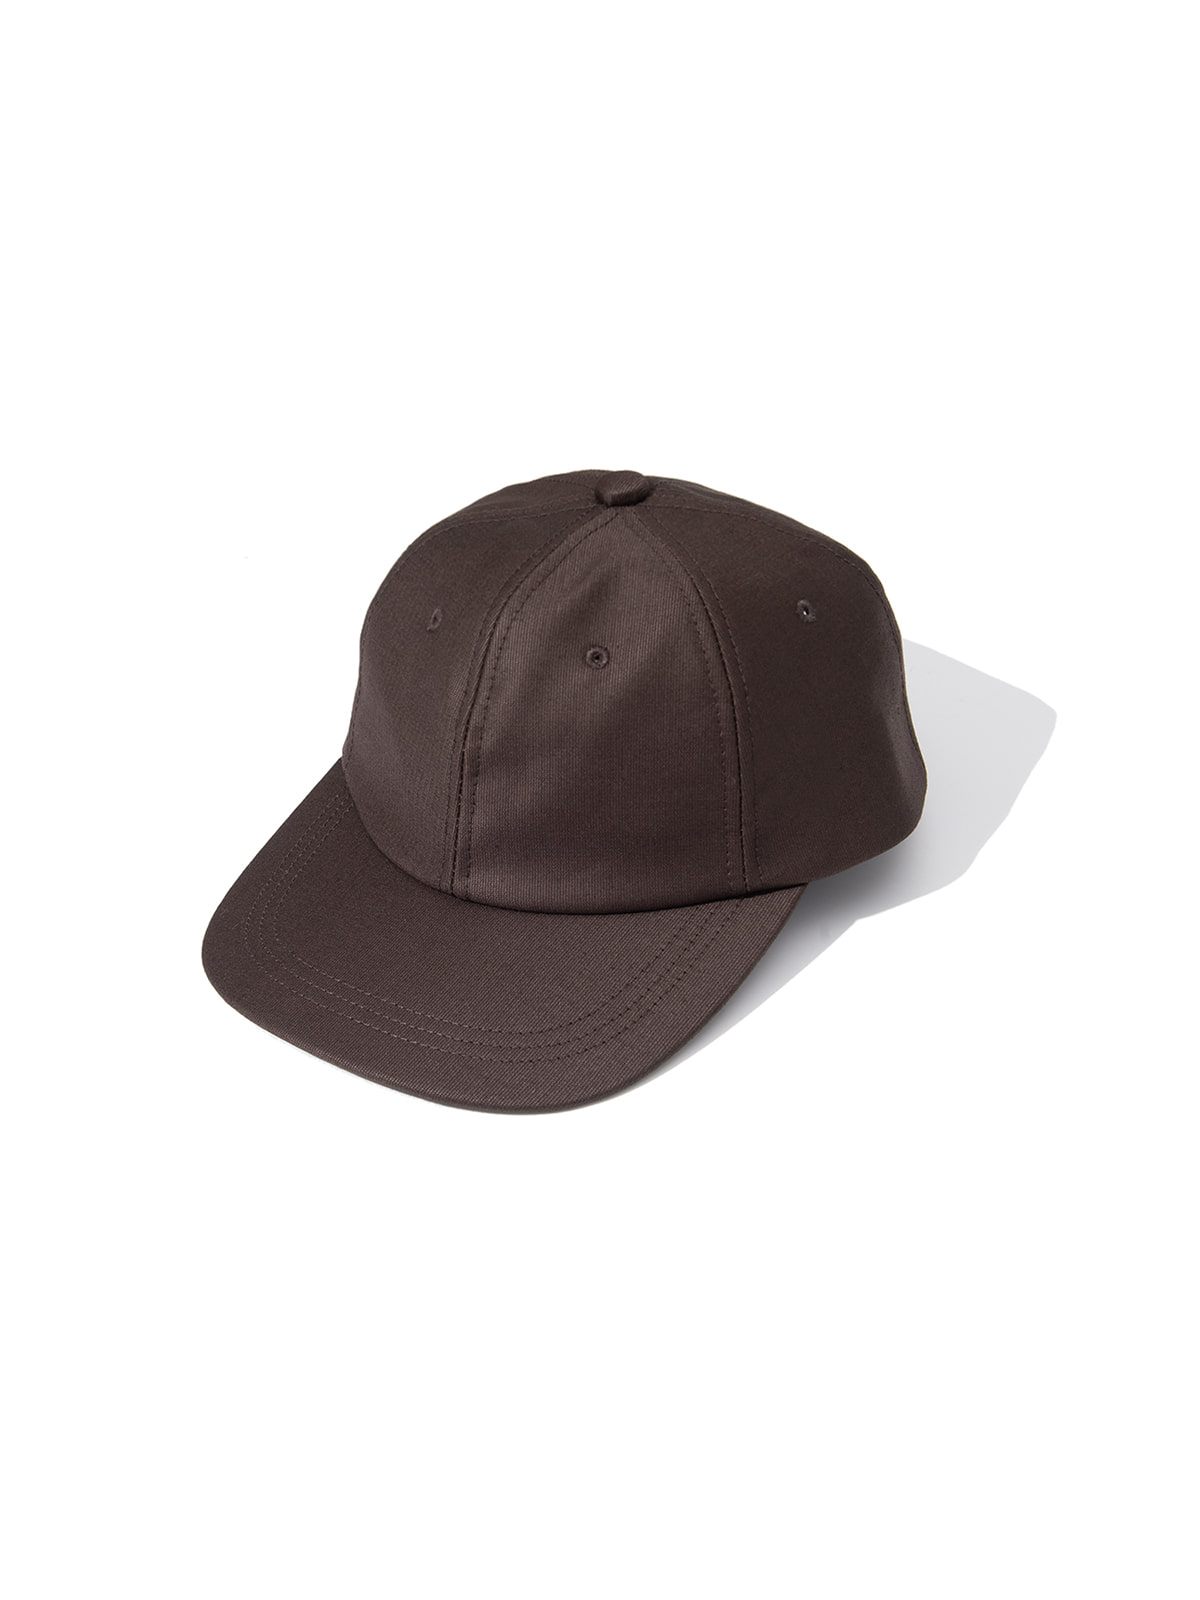 GIFT SHOP CAP (BROWN)